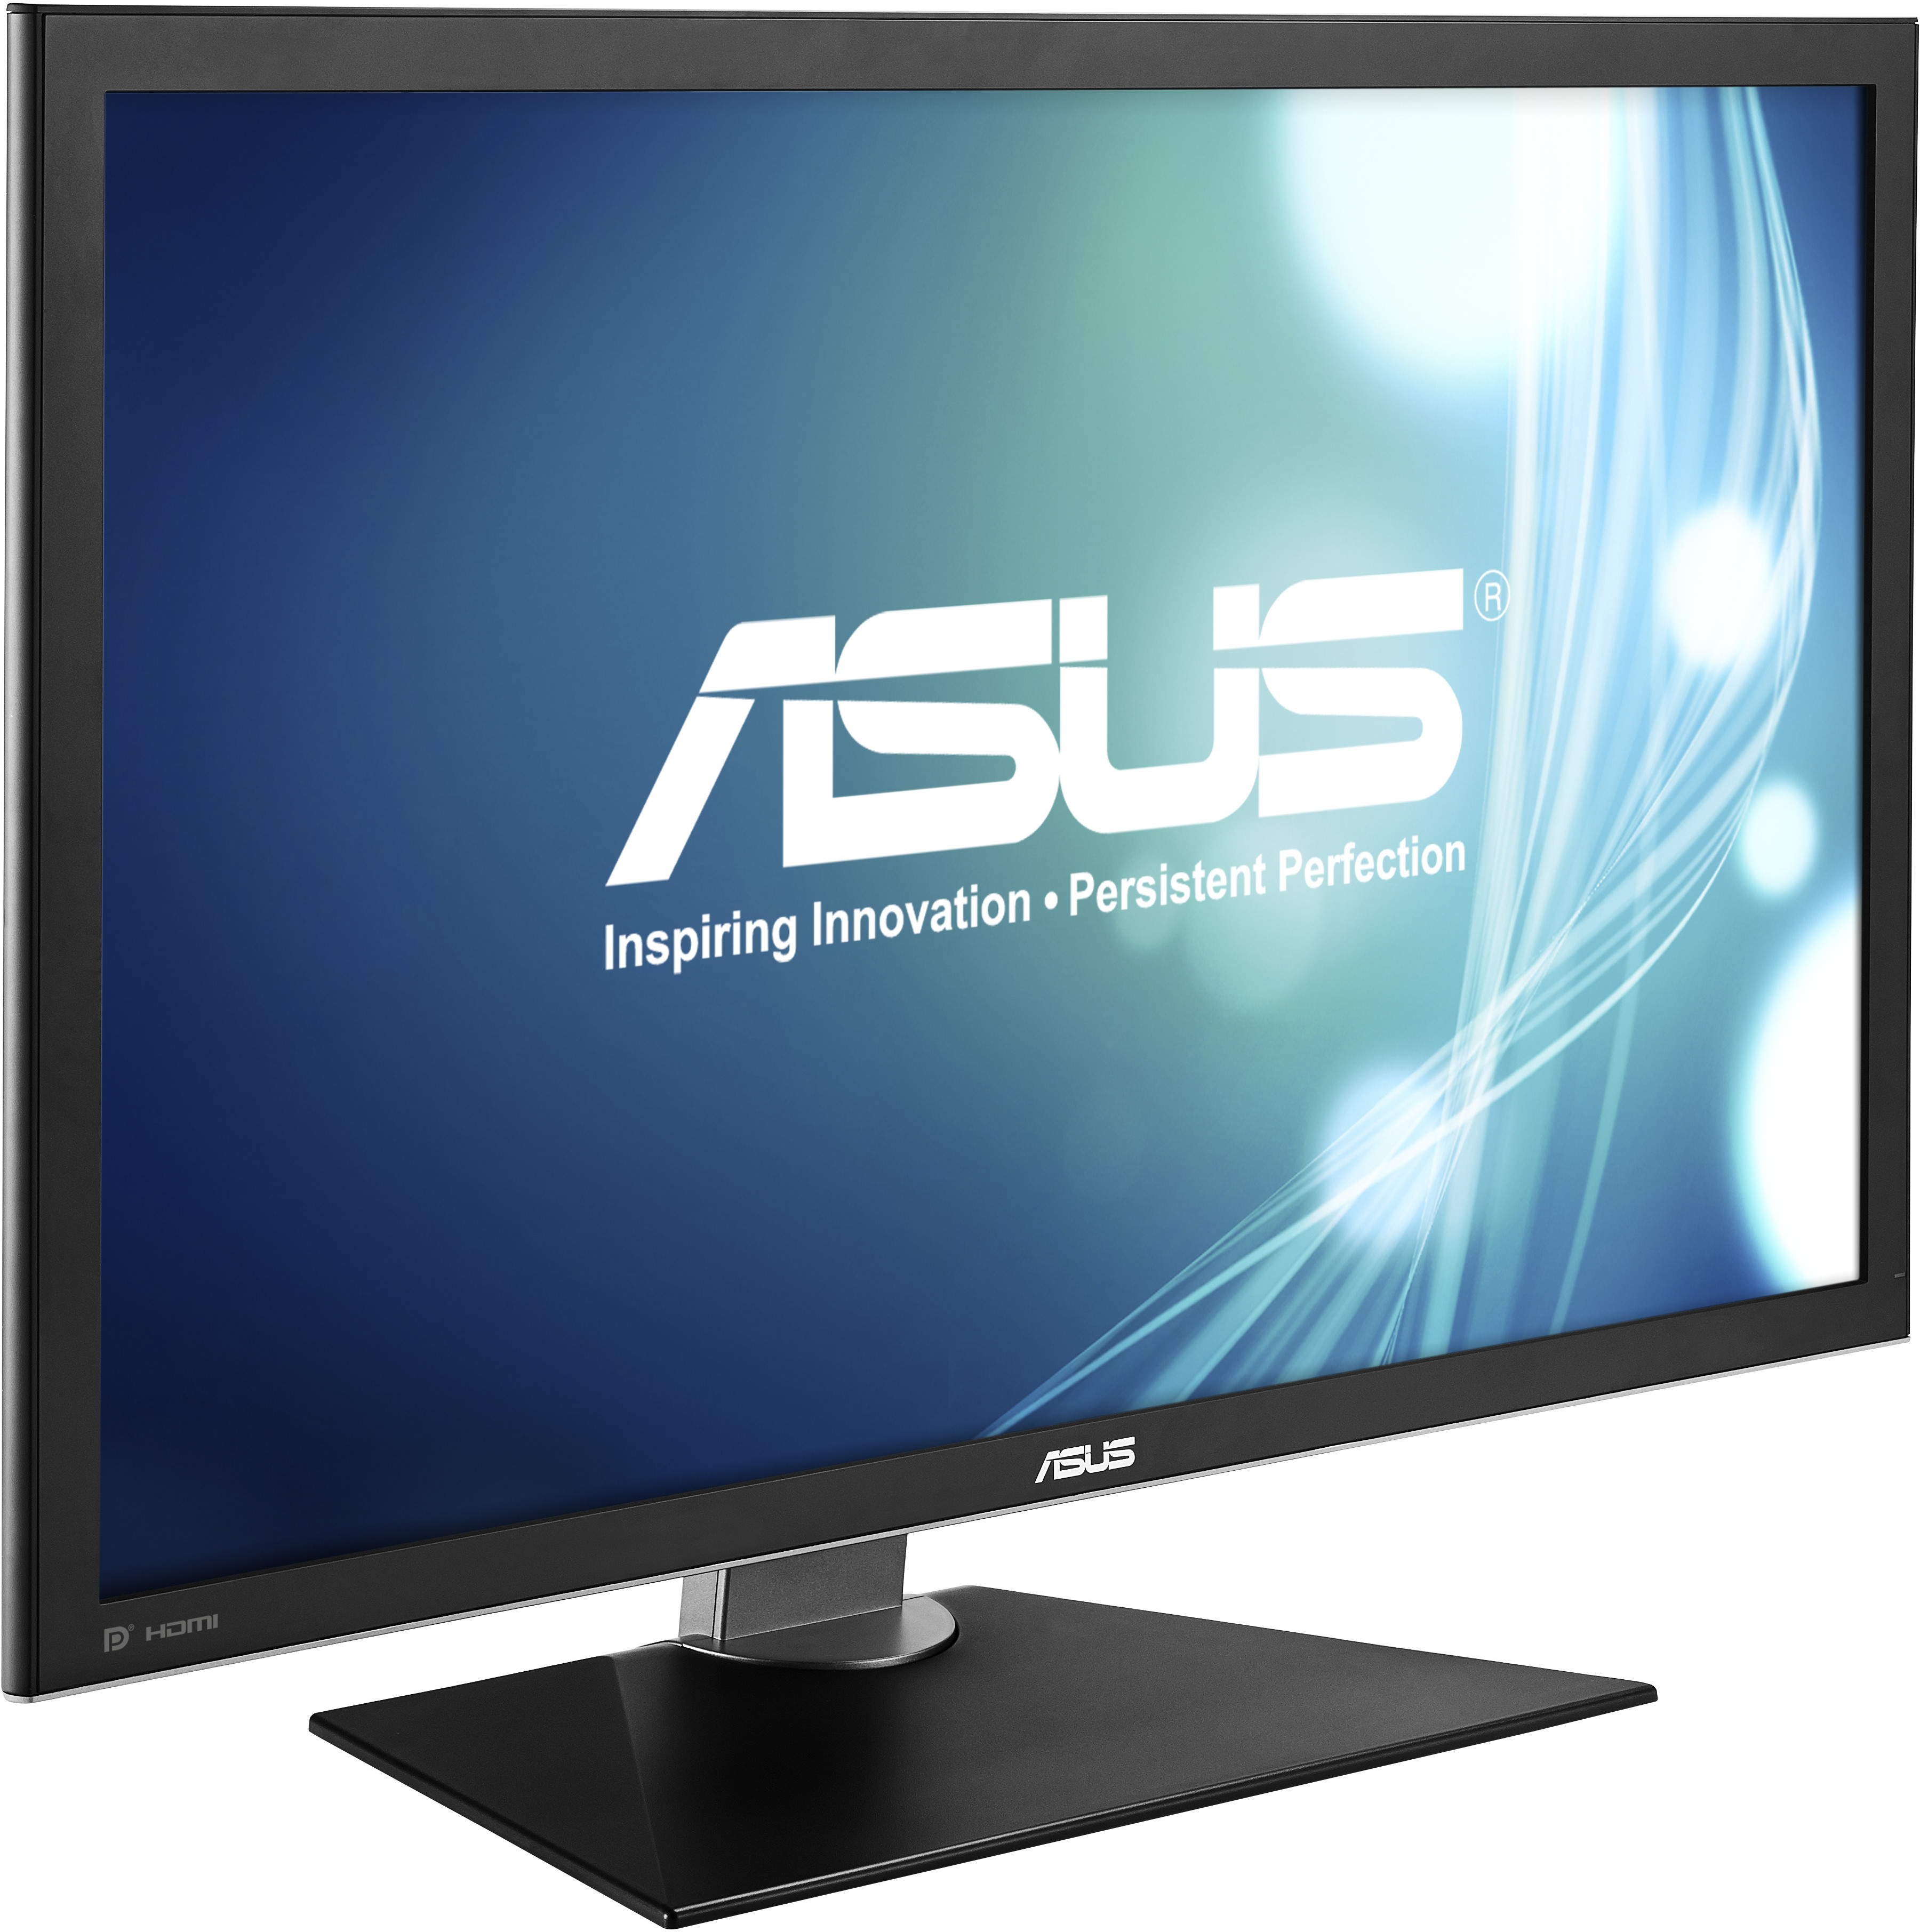 Asus ra mắt màn hình desktop siêu khủng: Panel IGZO, độ phân giải 4K